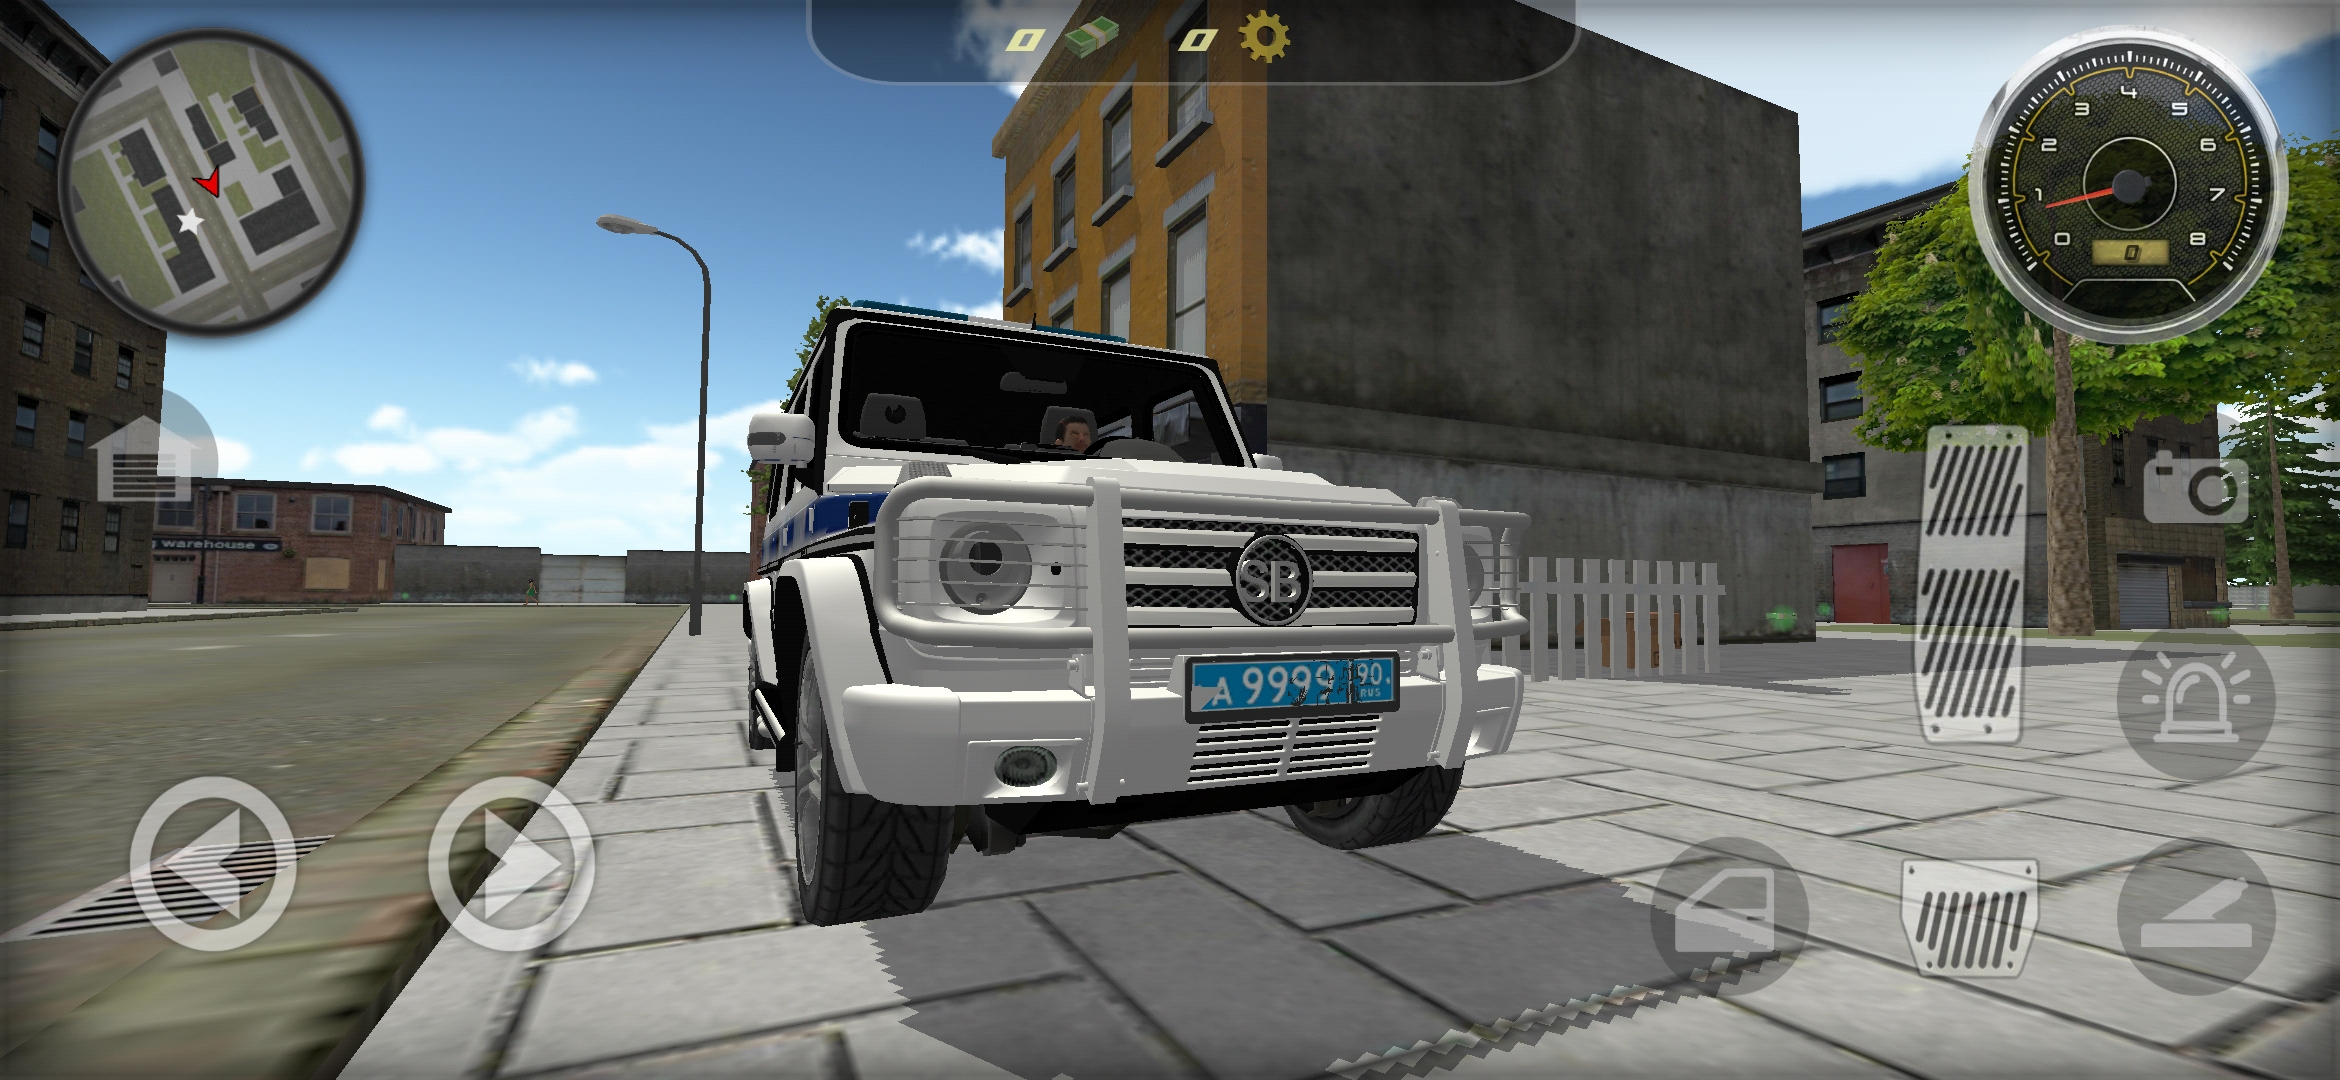 大G俄罗斯警车巡逻模拟游戏下载v1.11